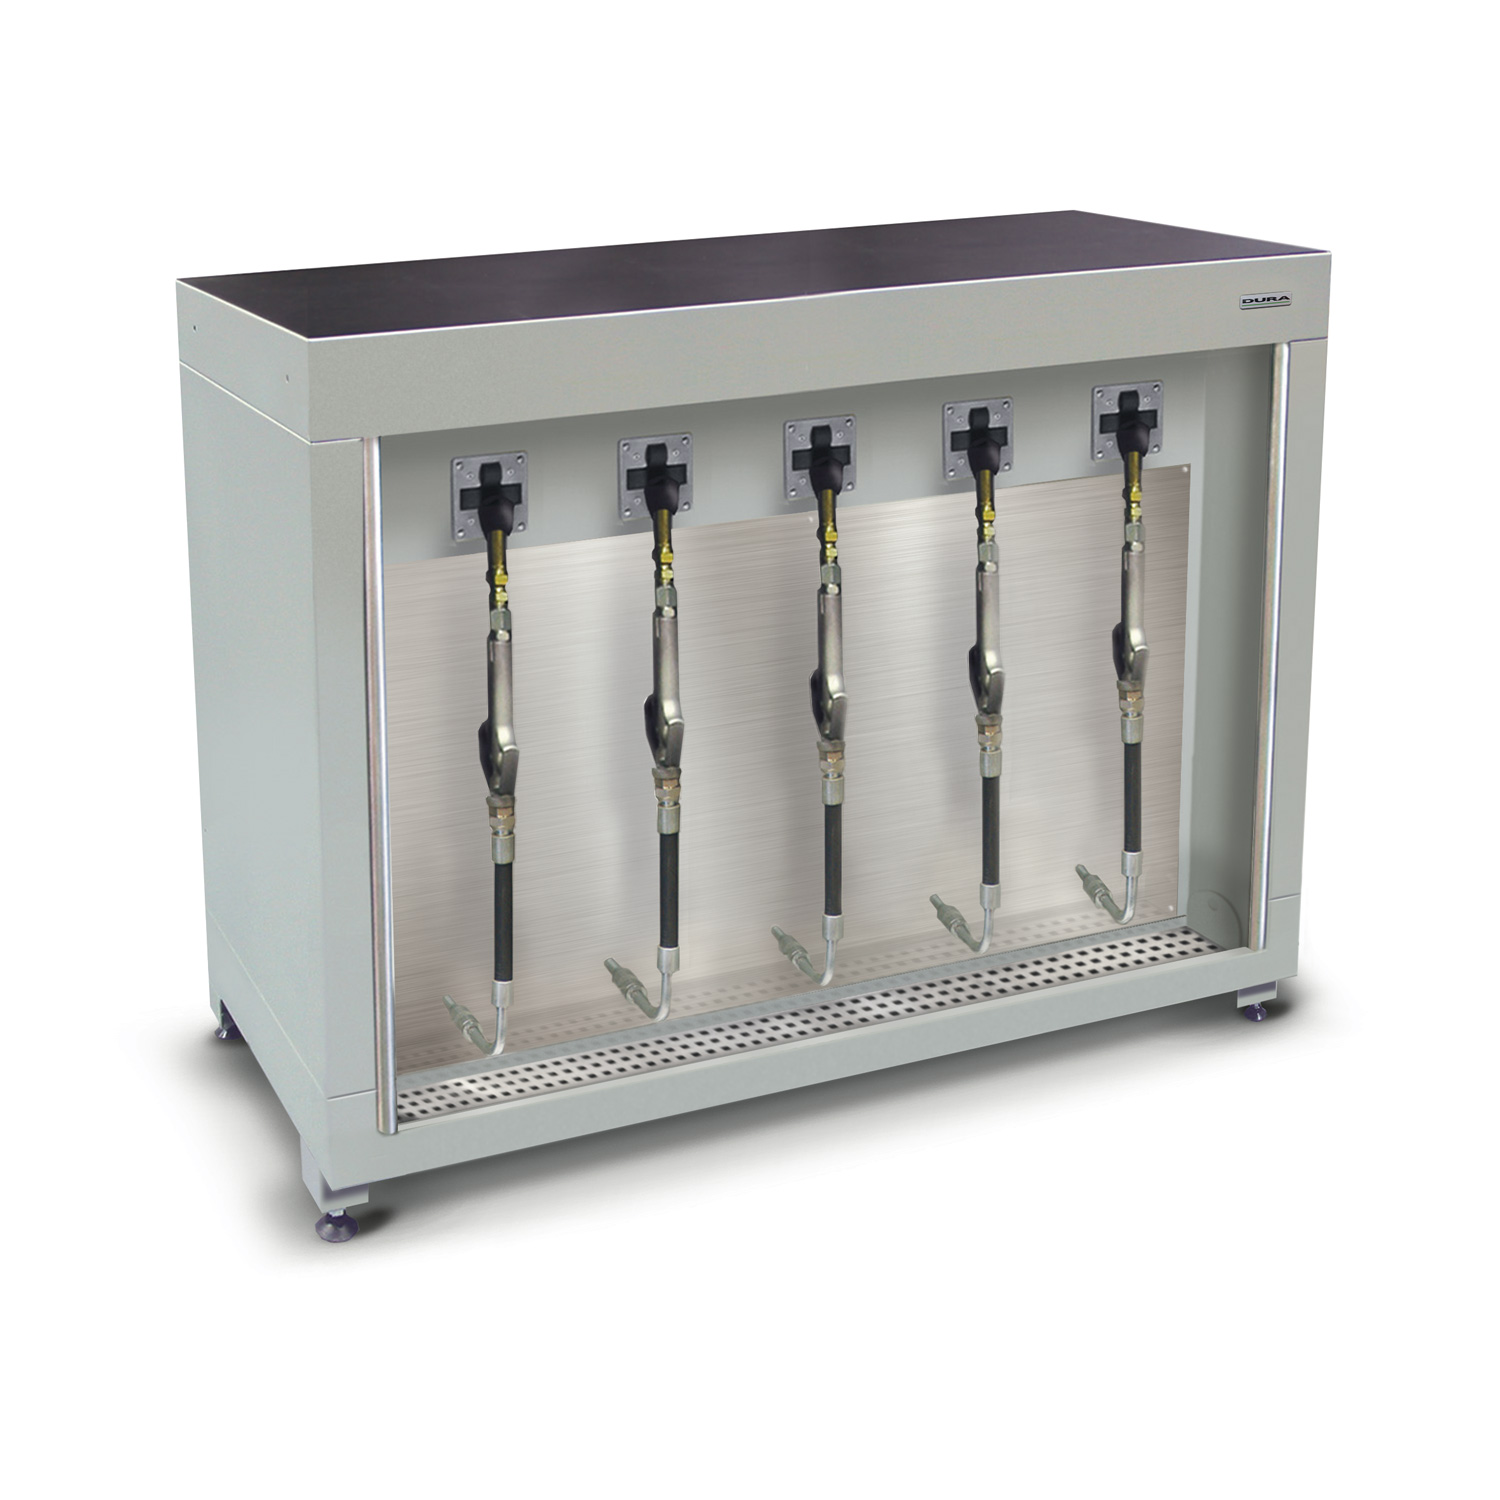 1200mm Low-level fluid management cabinet (600mm depth)